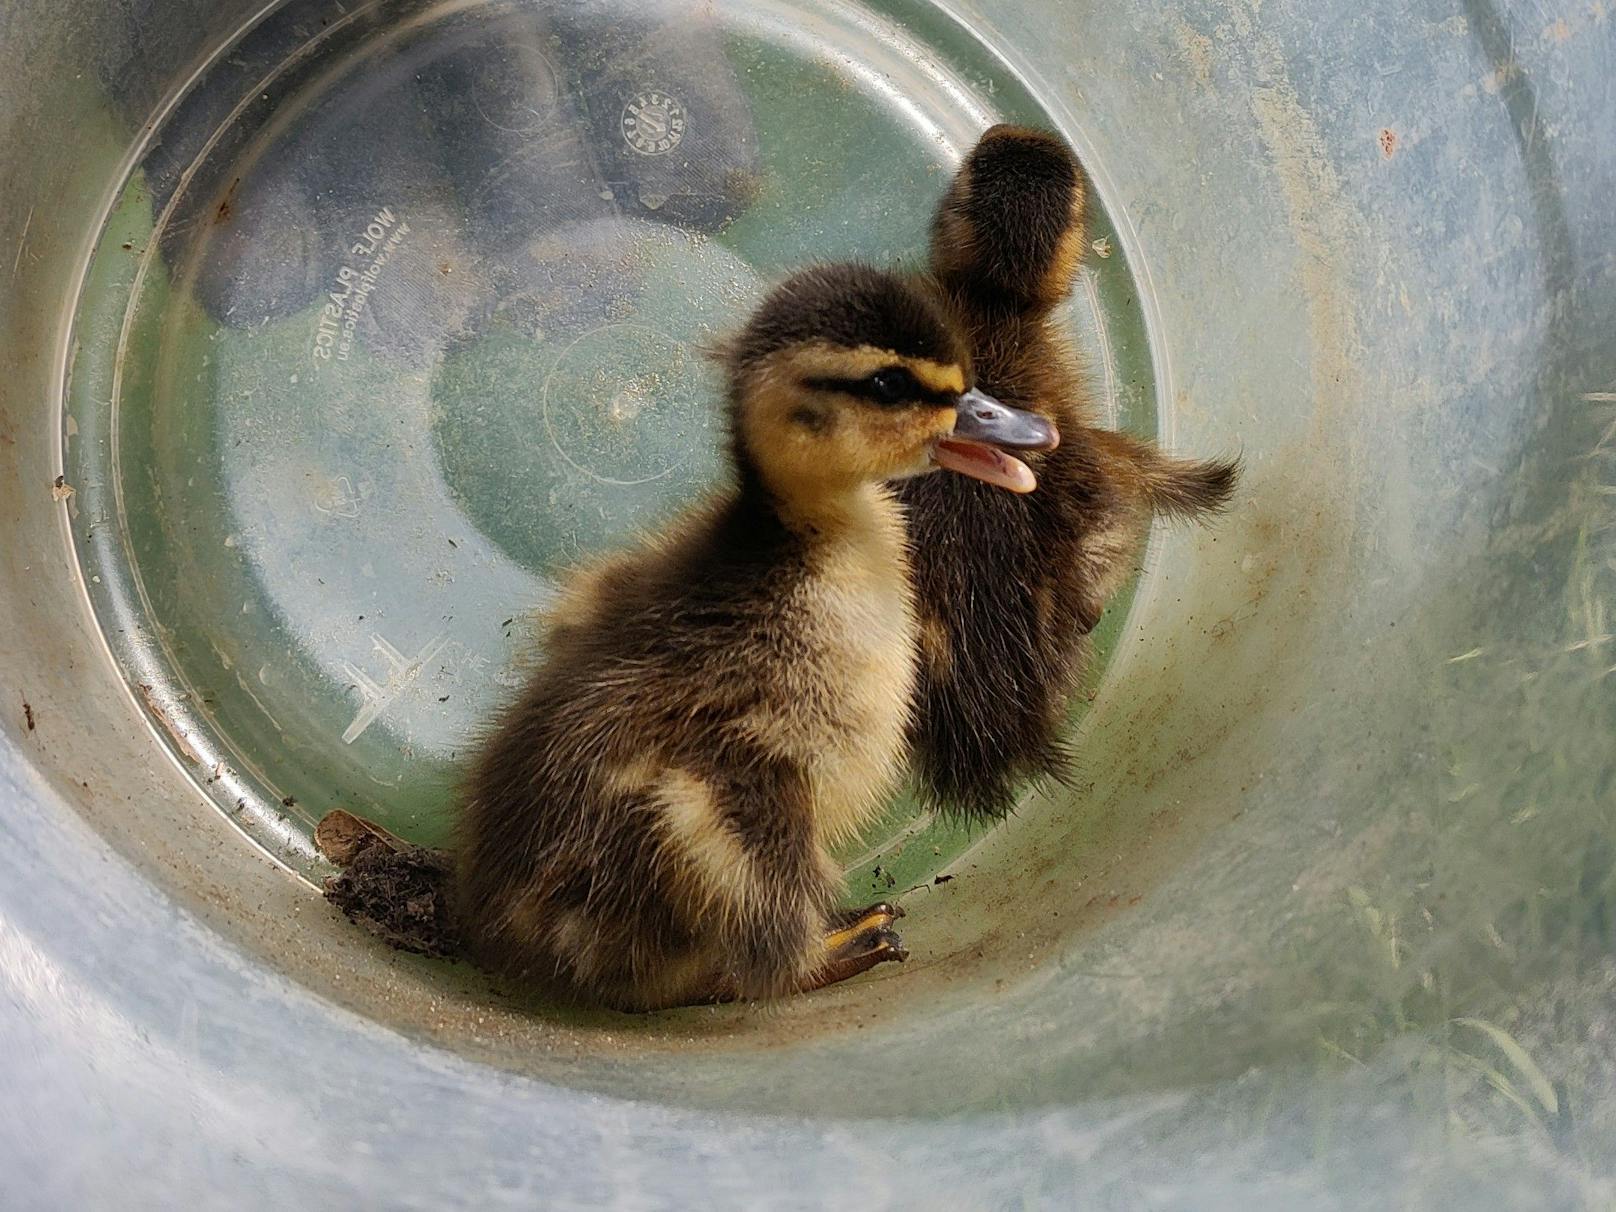 Entenfamilie plumpste in Abwasserschacht – gerettet